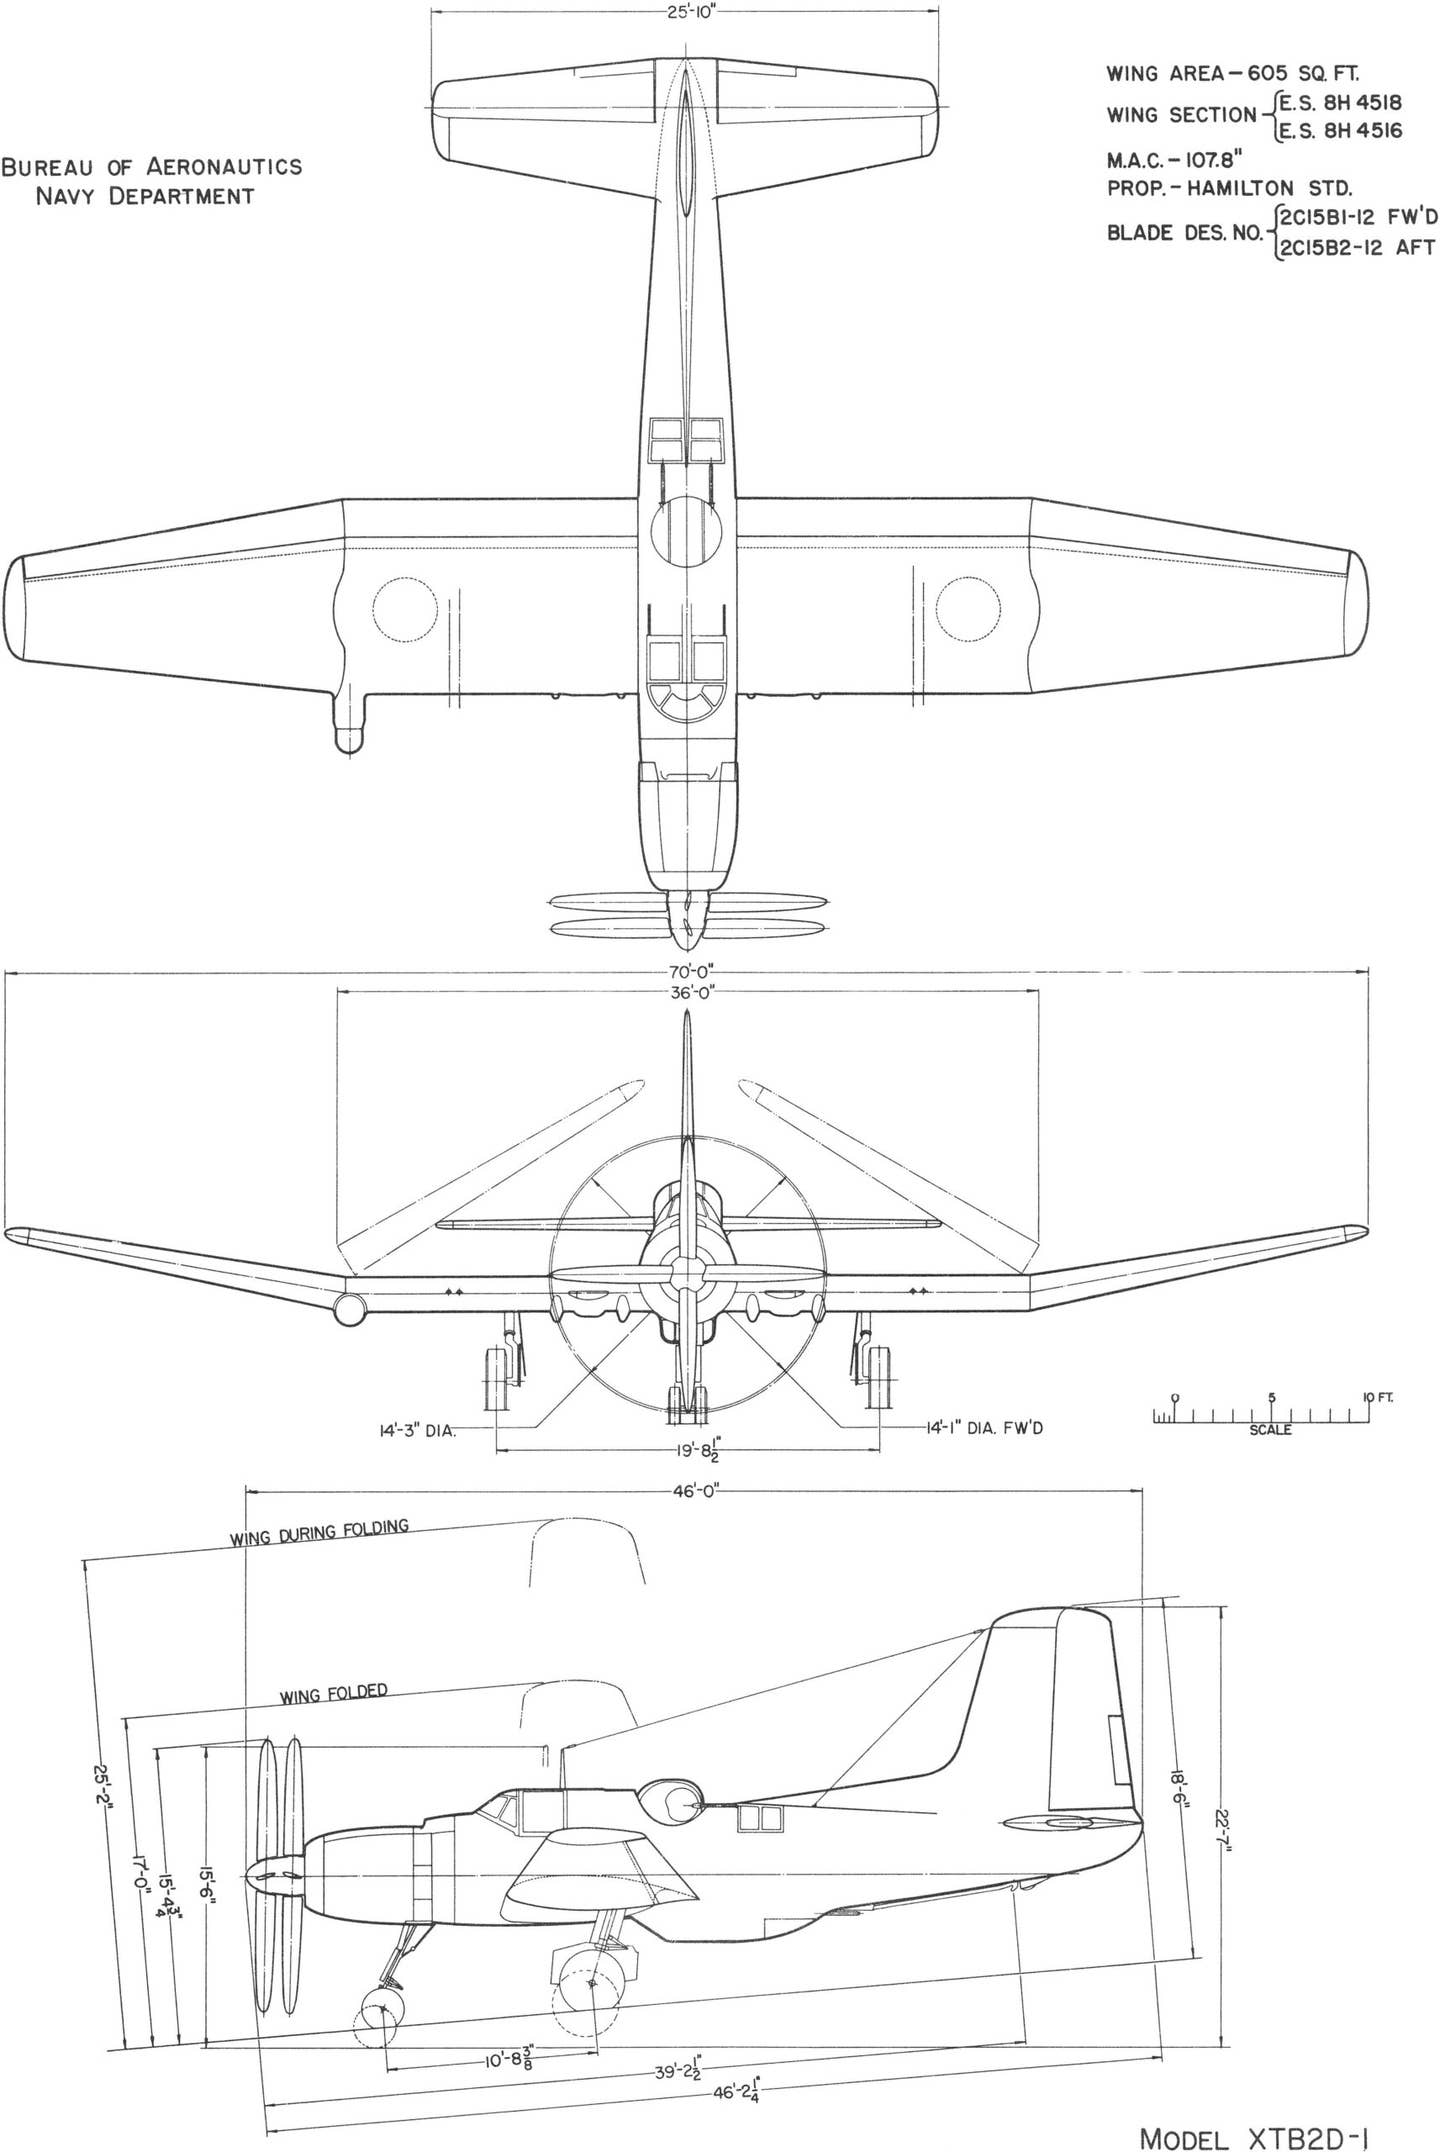 BuAer line drawing of the Skypirate, c. 1944.<em> Bureau of Aeronautics, Navy Department</em>